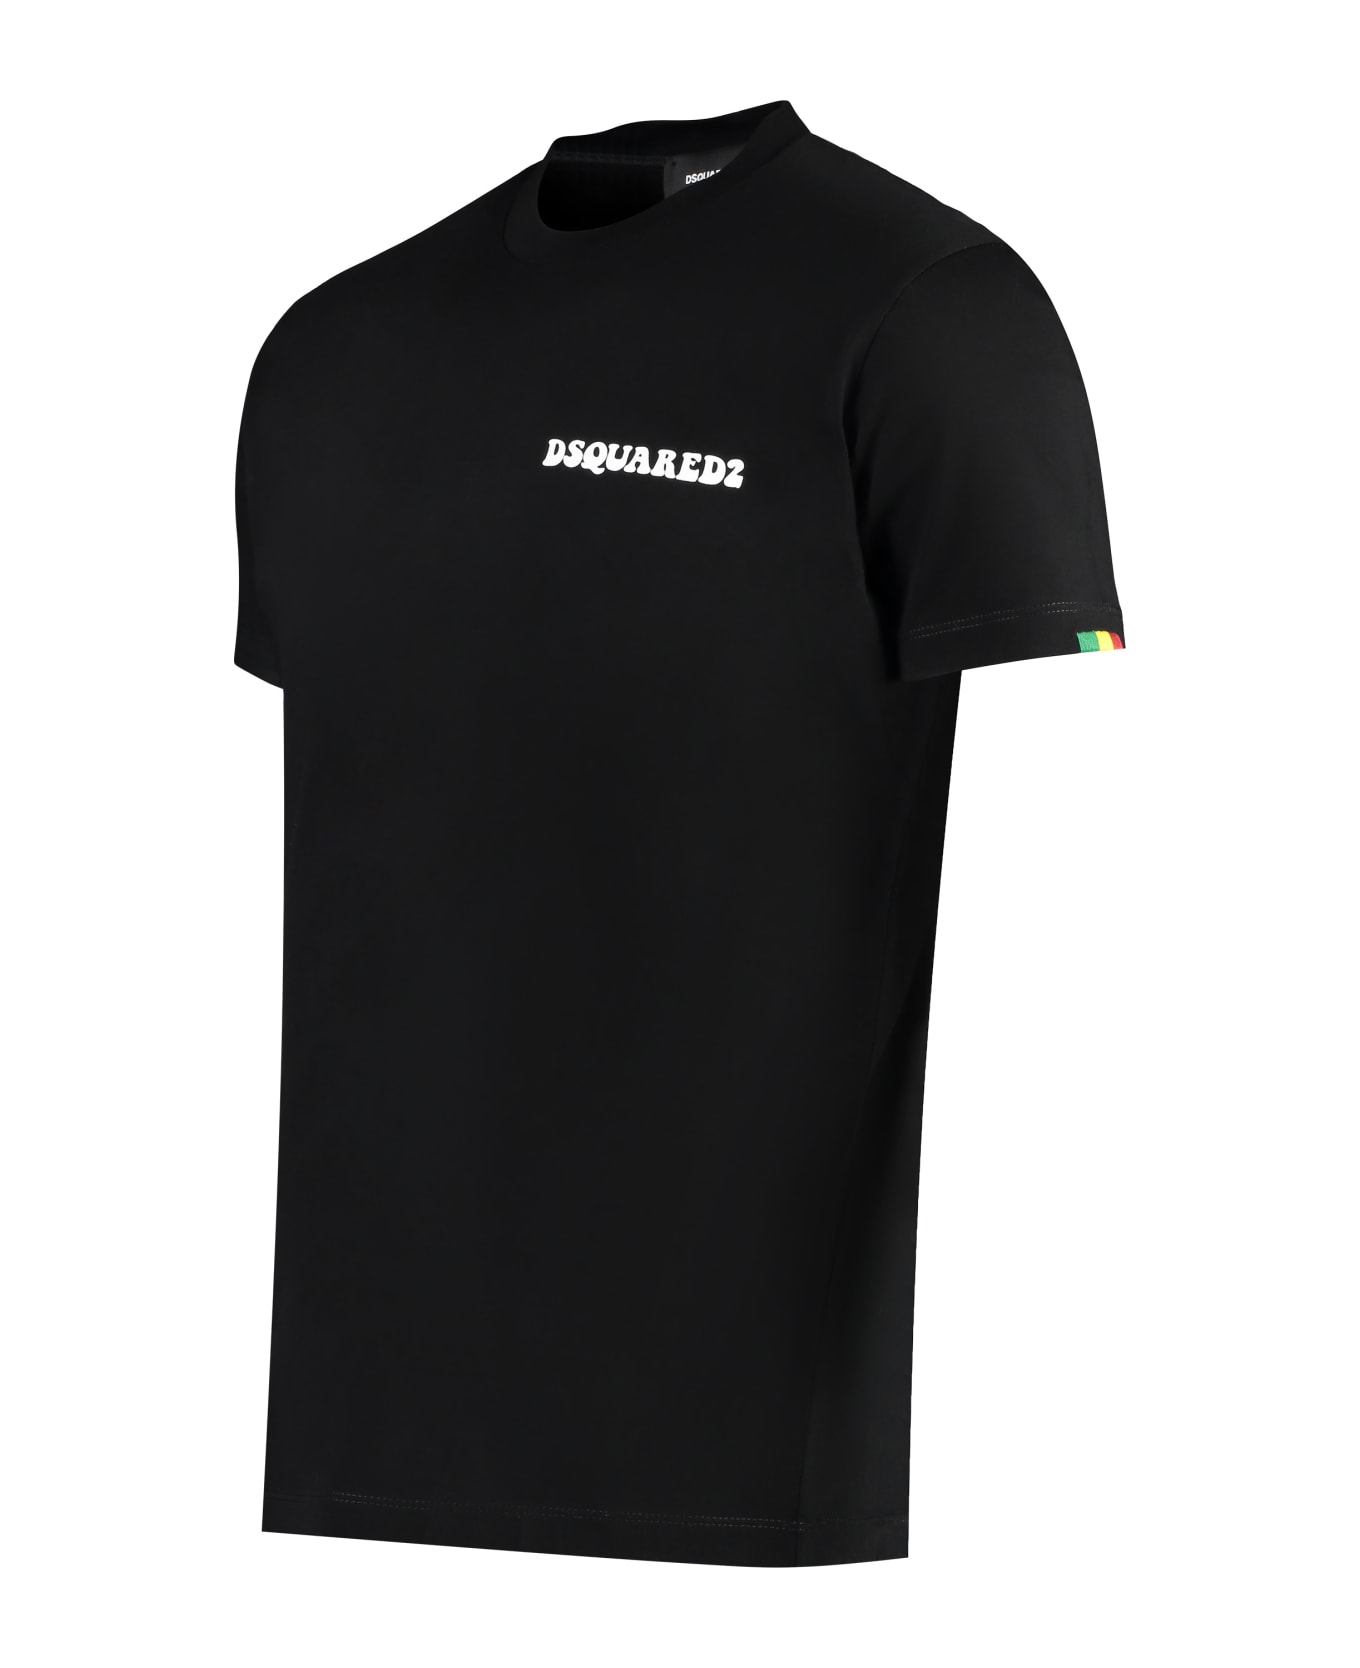 Dsquared2 Cotton T-shirt - black